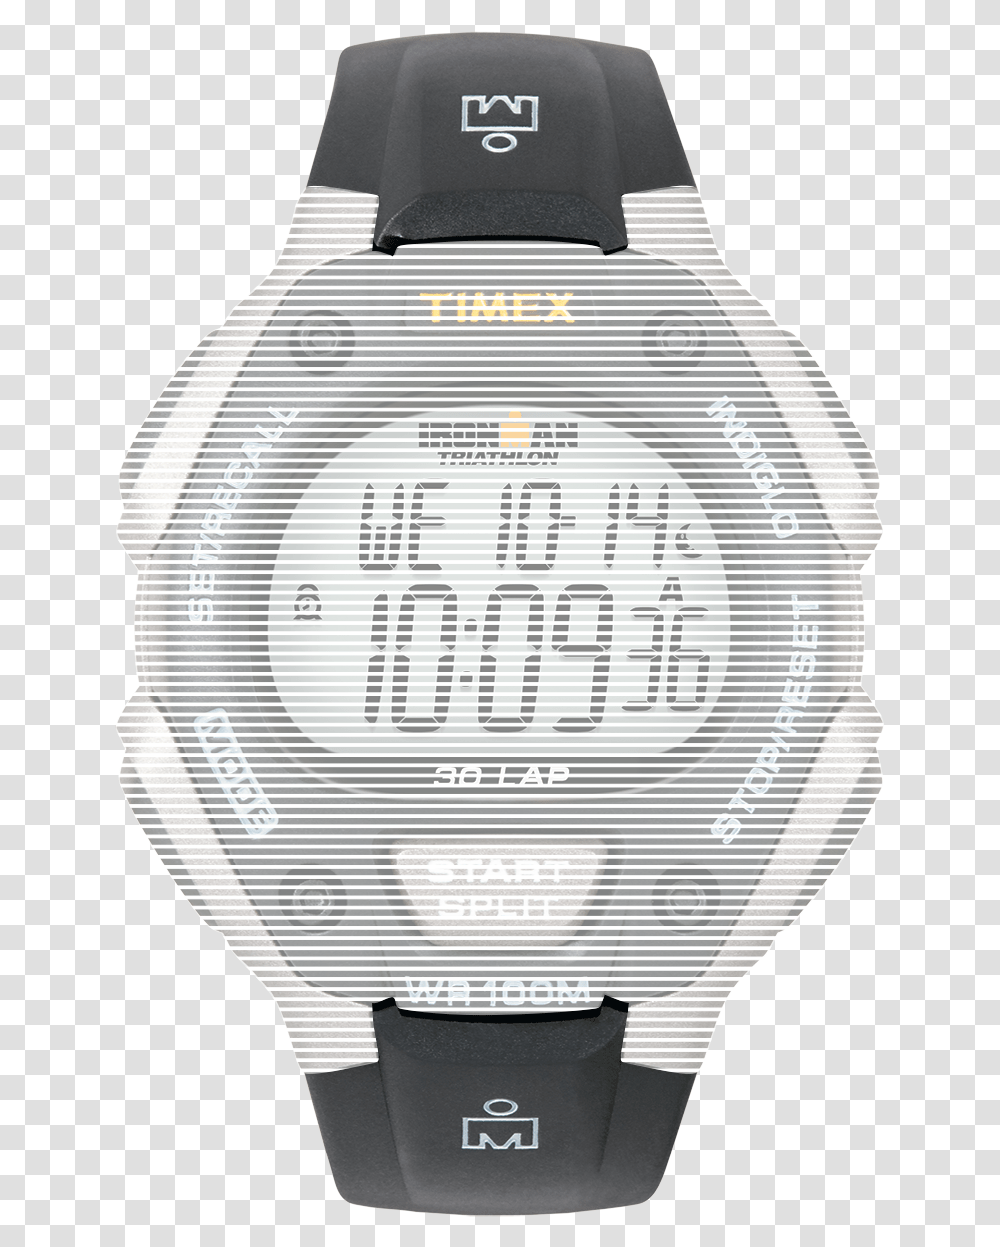 Watch, Digital Watch, Wristwatch, Shirt Transparent Png